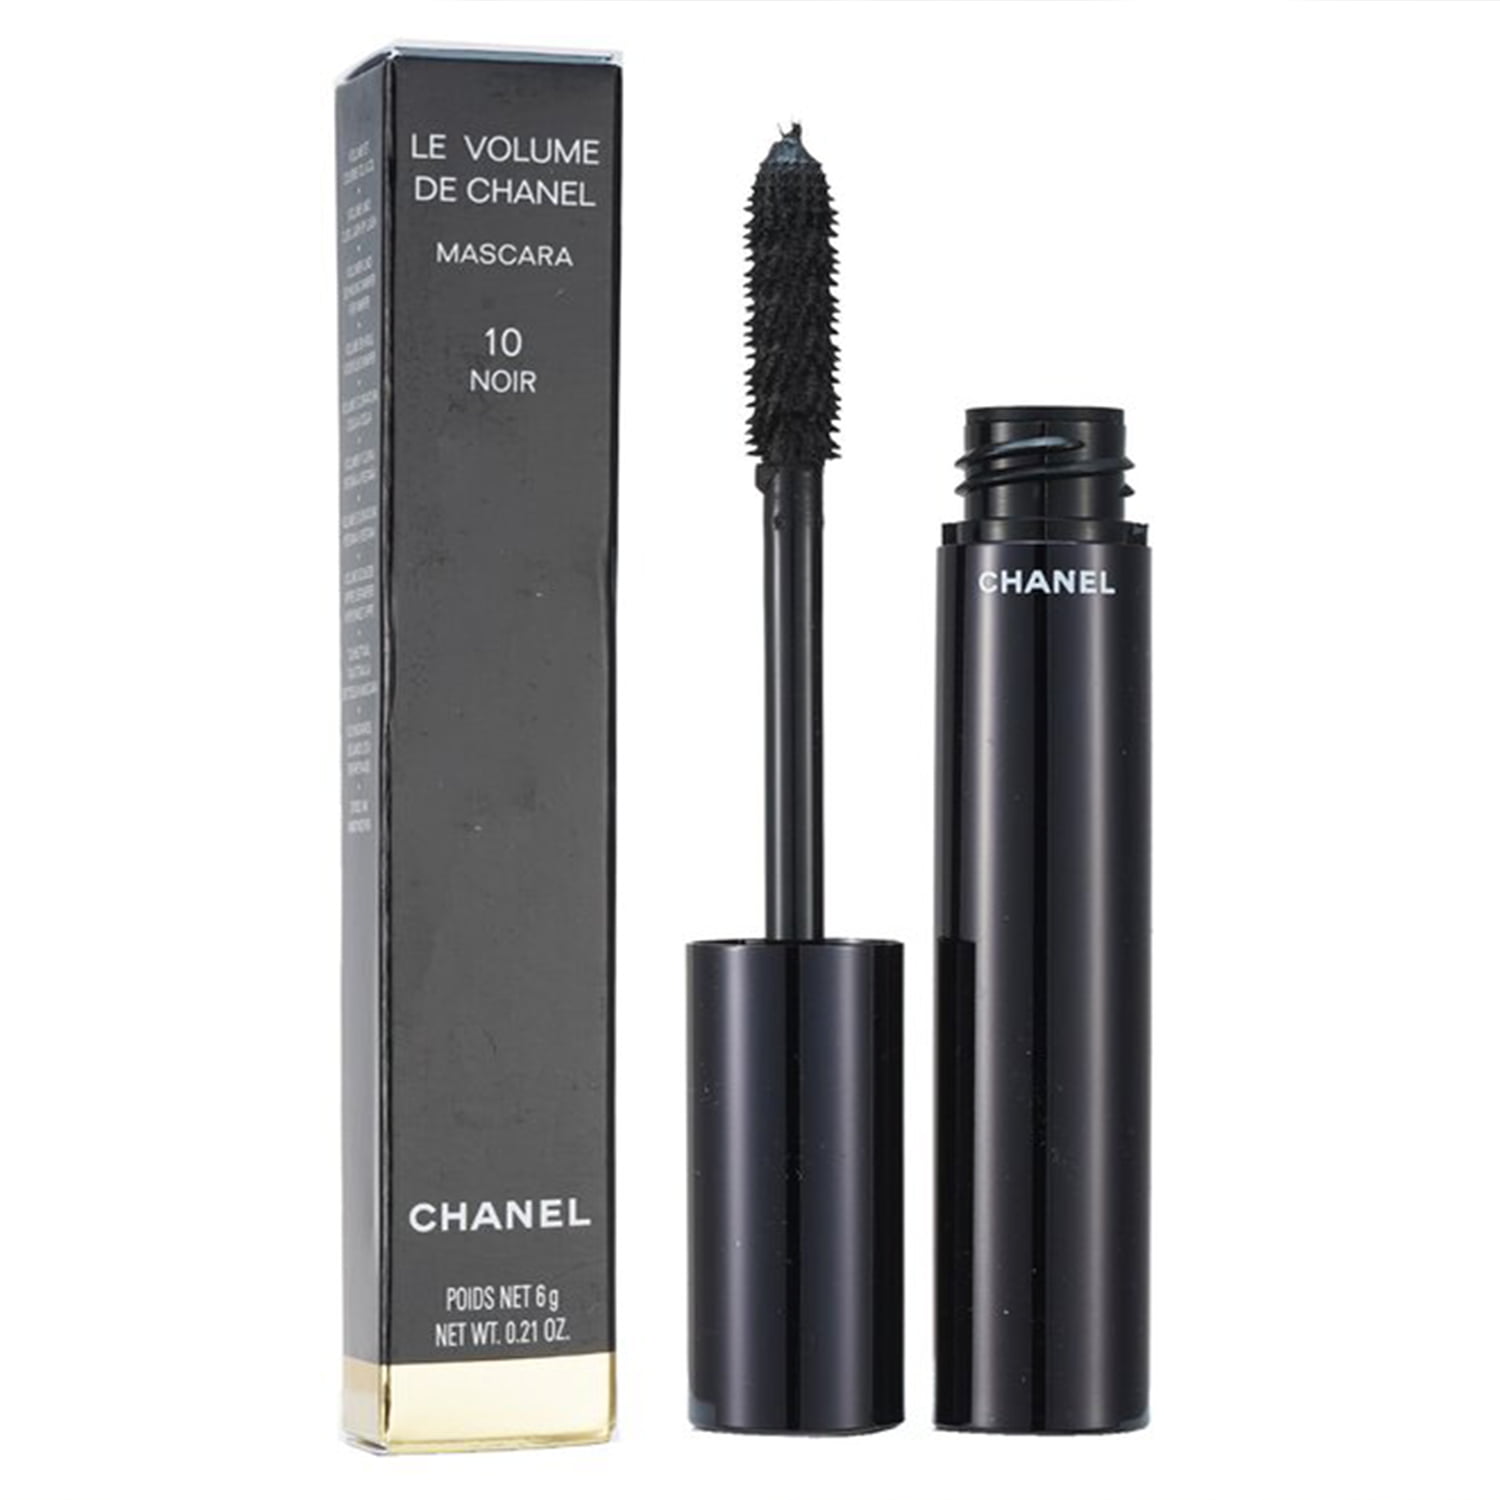 Le Volume De Chanel Mascara - # 10 Noir - 6g/0.21oz 